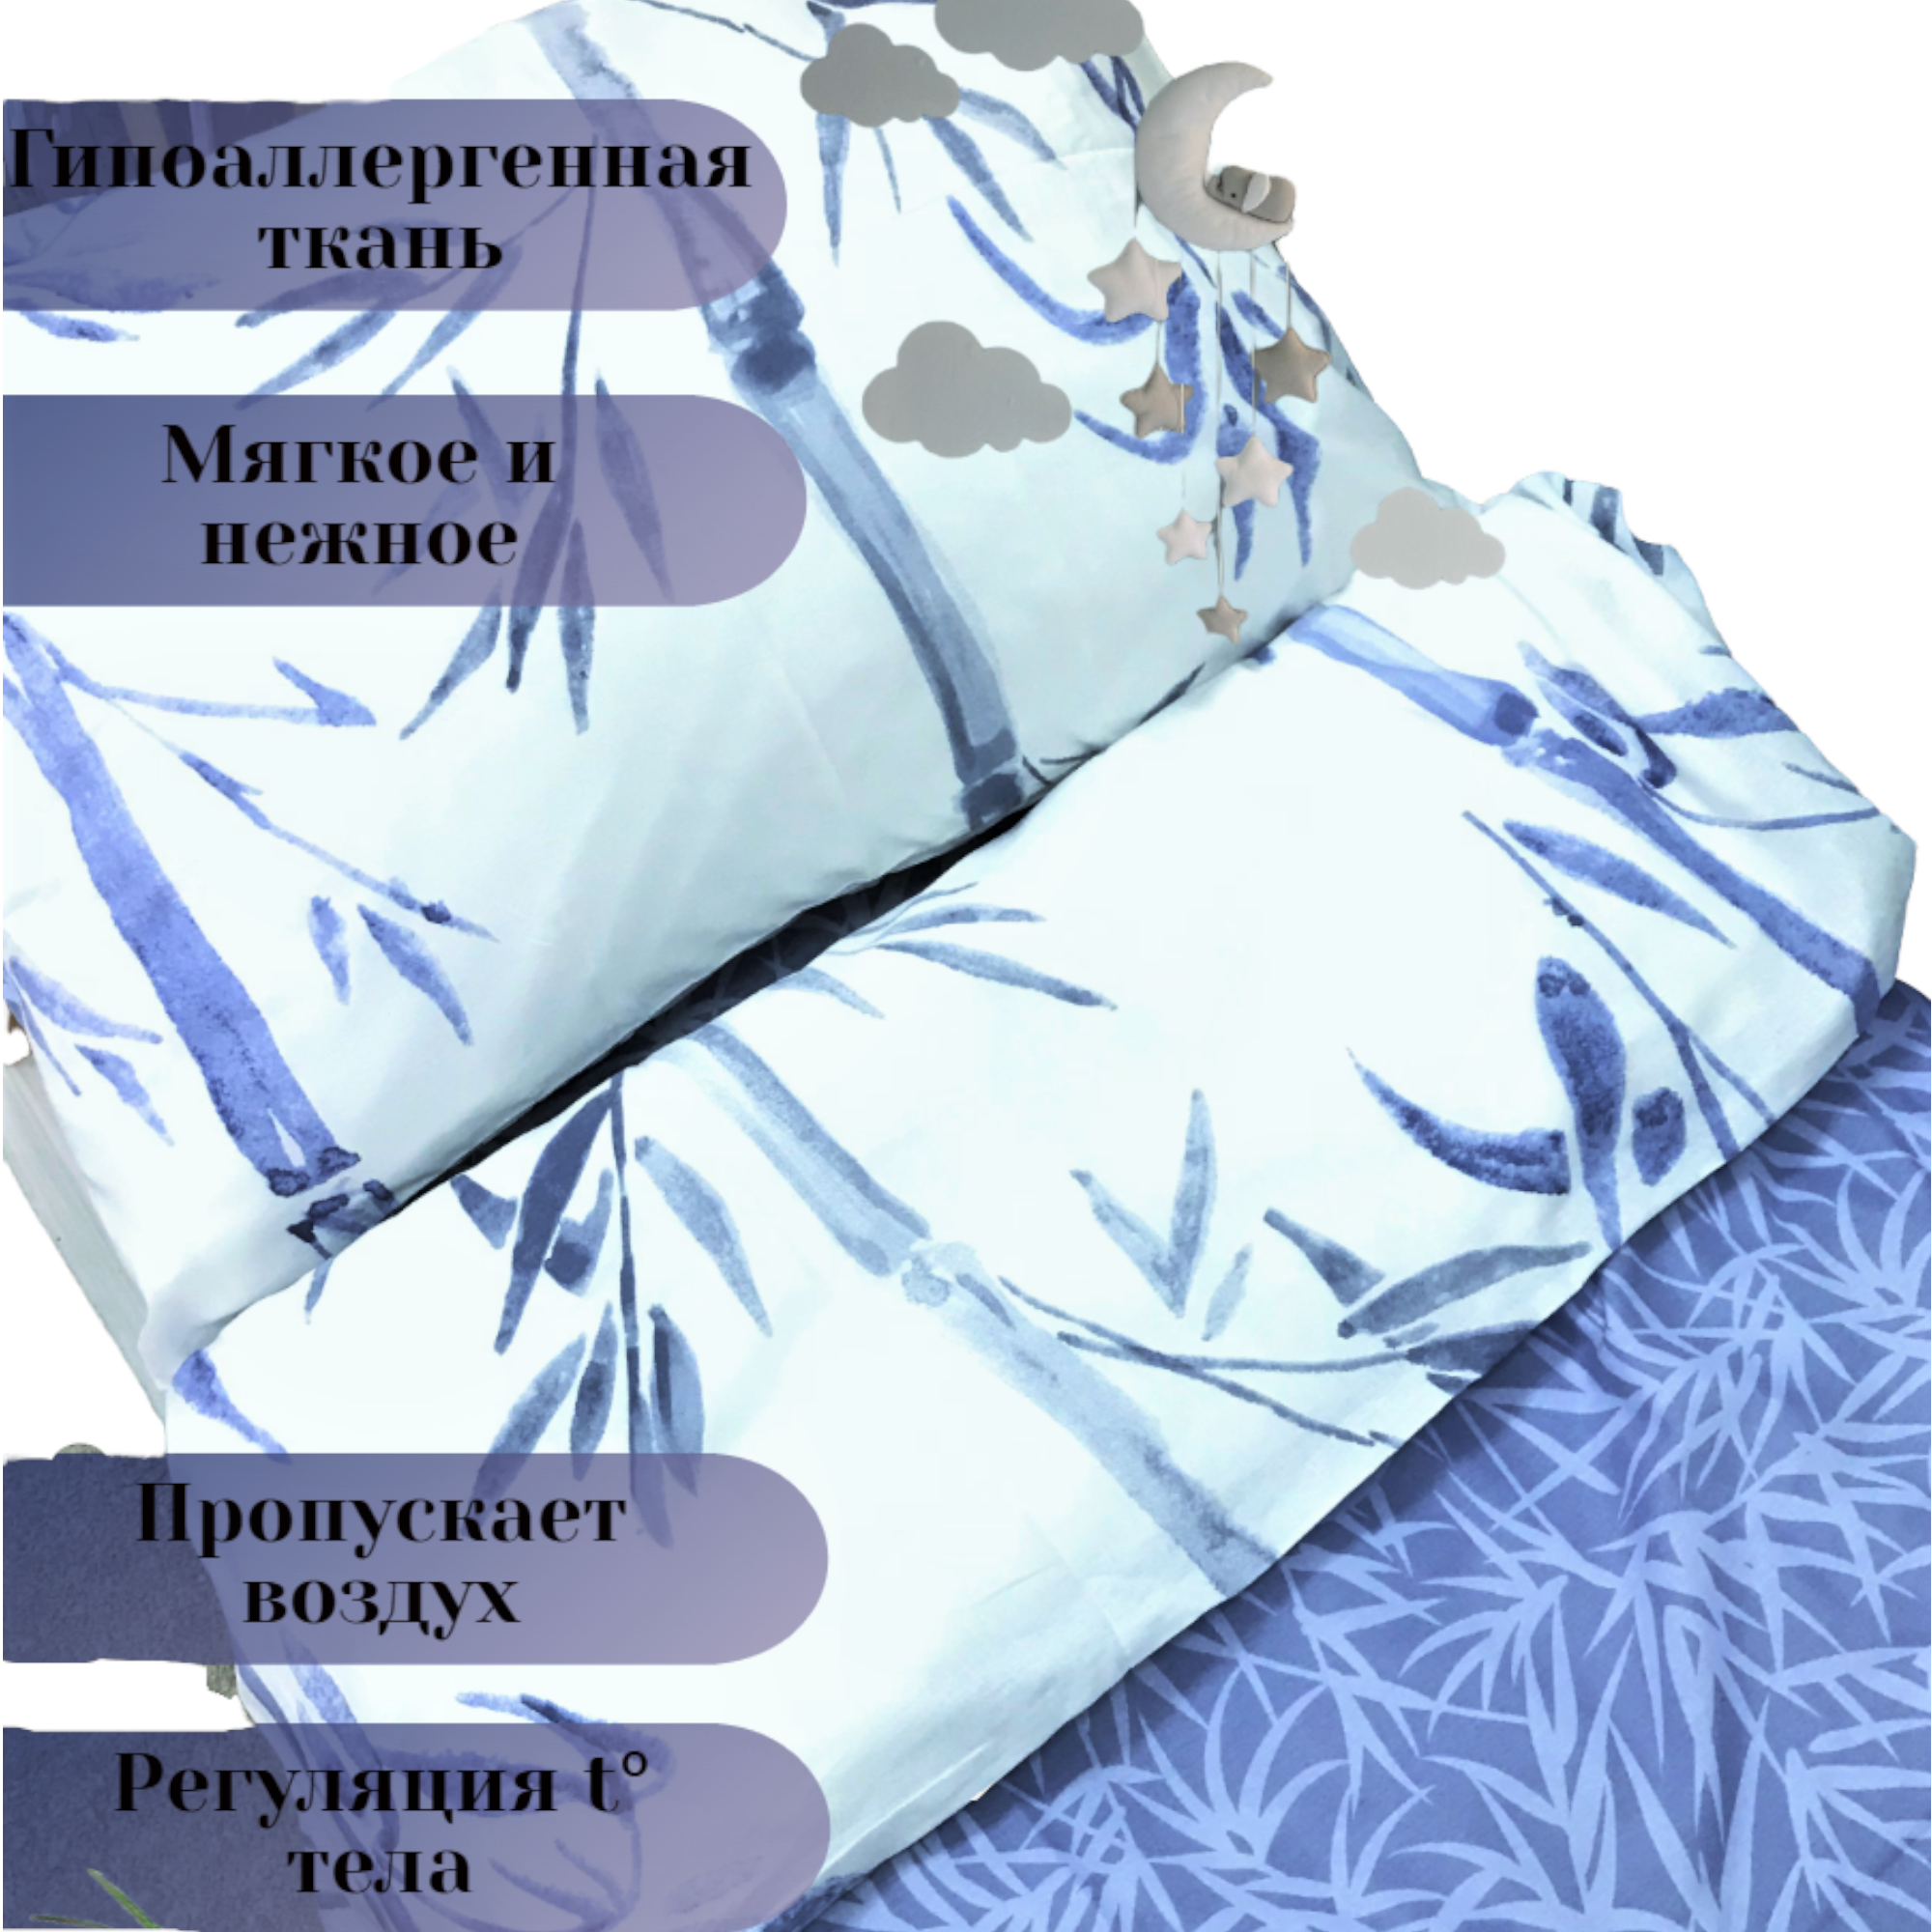 Комплект постельного белья SONA and ILONA детский 3 предмета (160х80) - фото 9